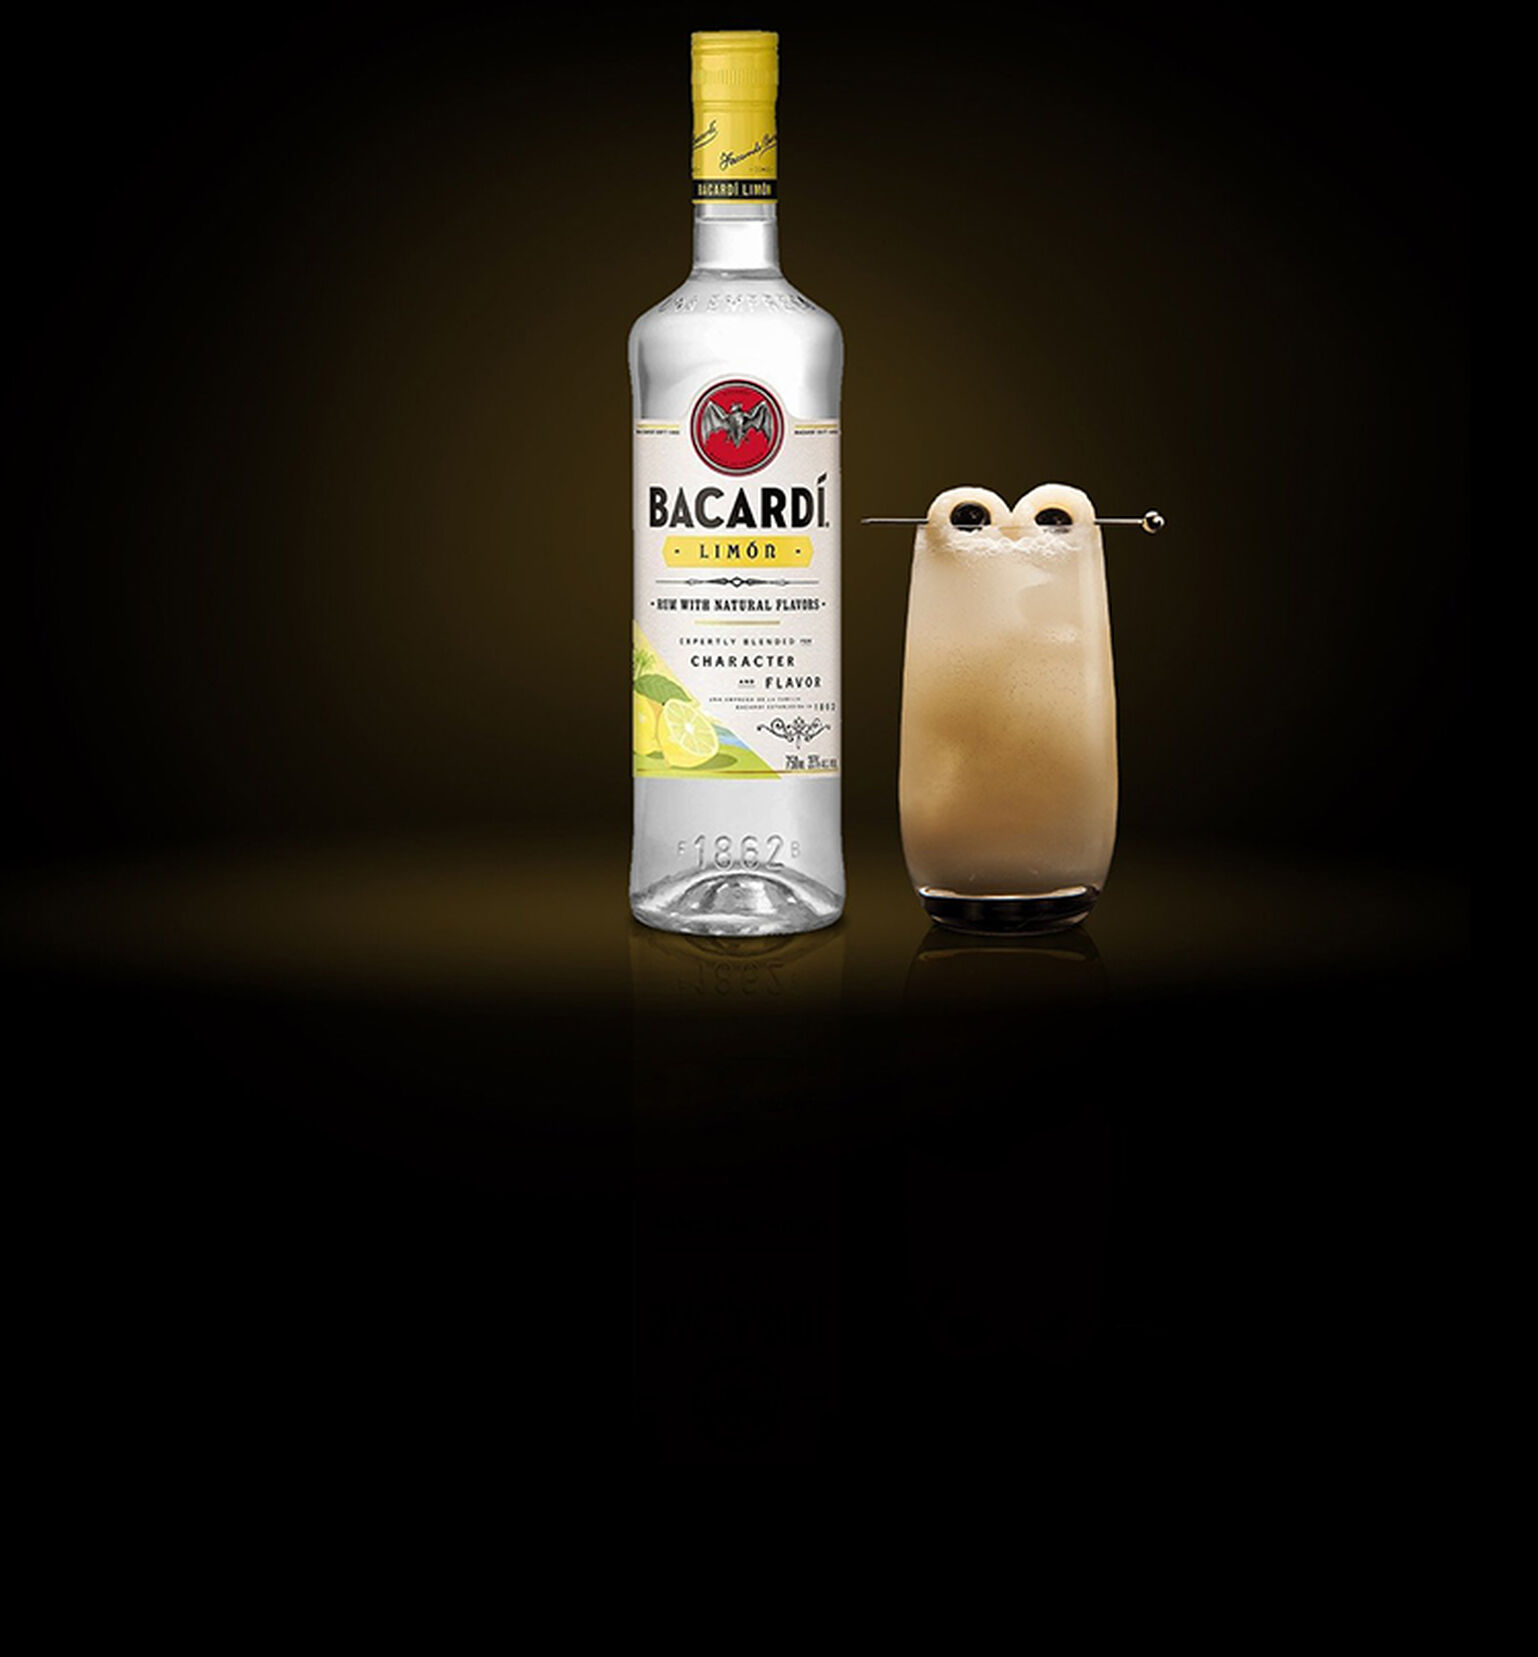 The BACARDÍ Tropical Ghost Cocktail